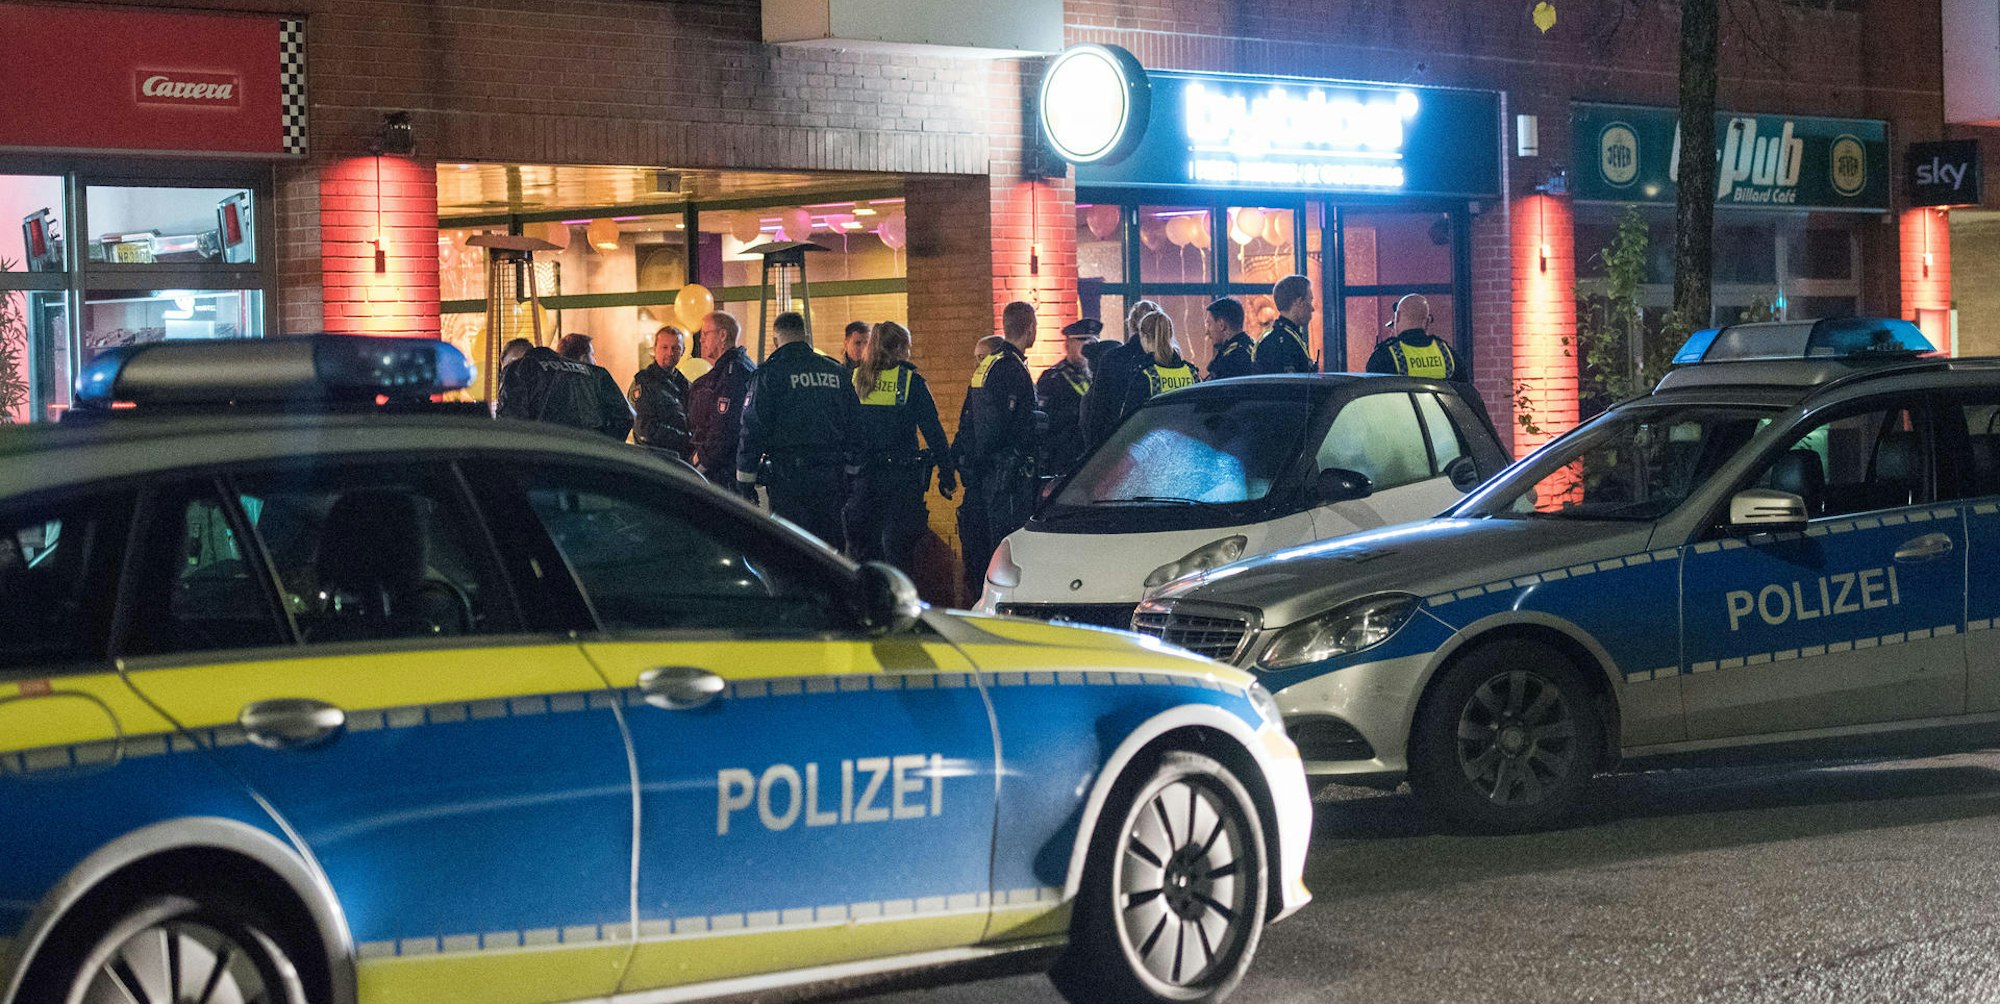 hamburg schüsse in club polizei wagen